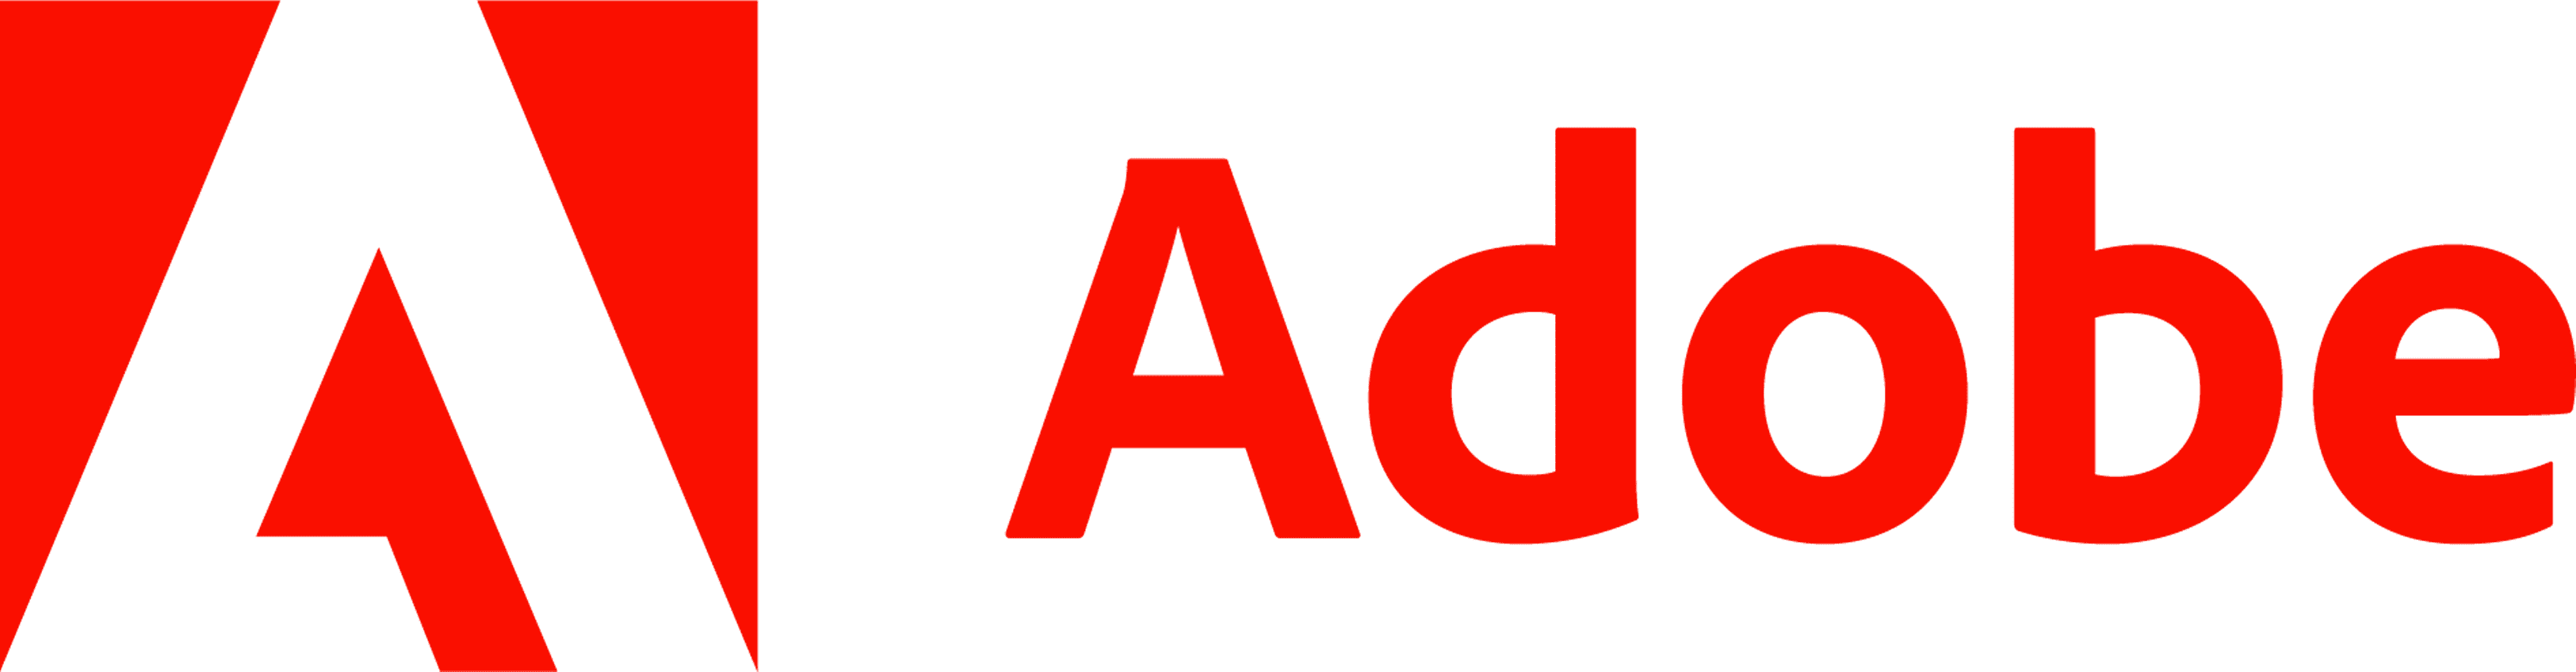 Adobe-logo_horizontal.png